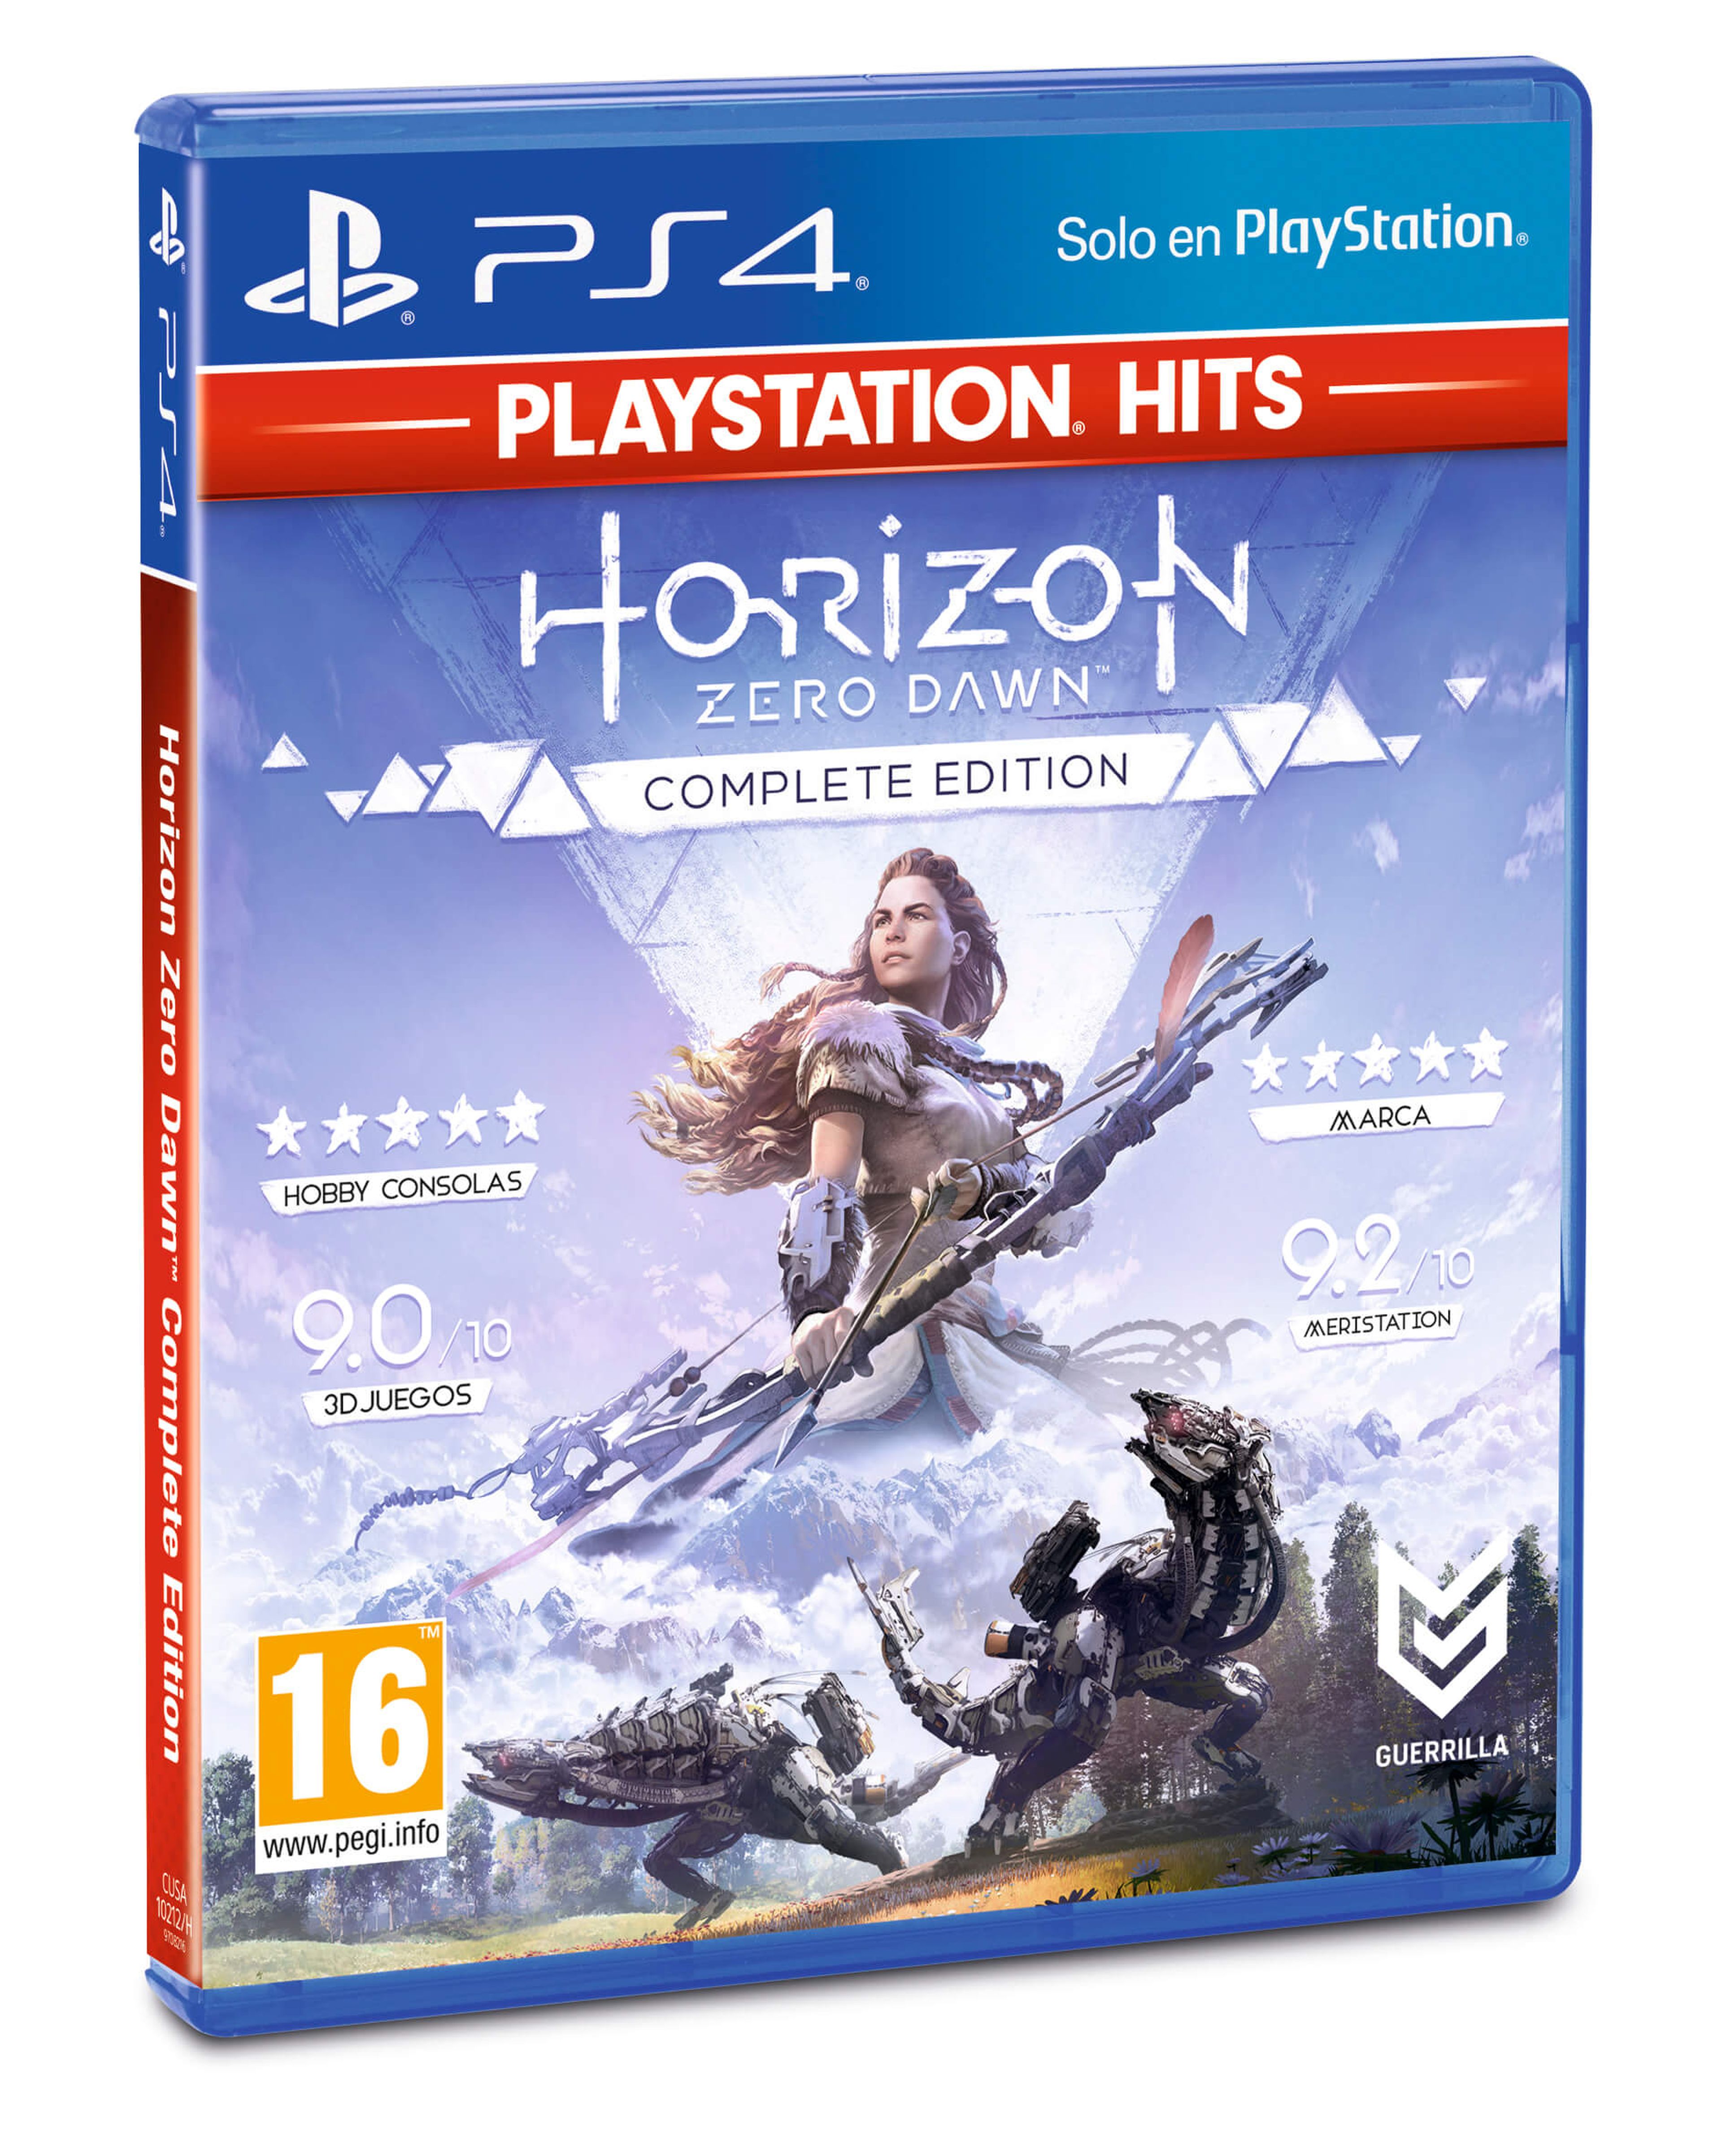 Horizon PlayStation Hits